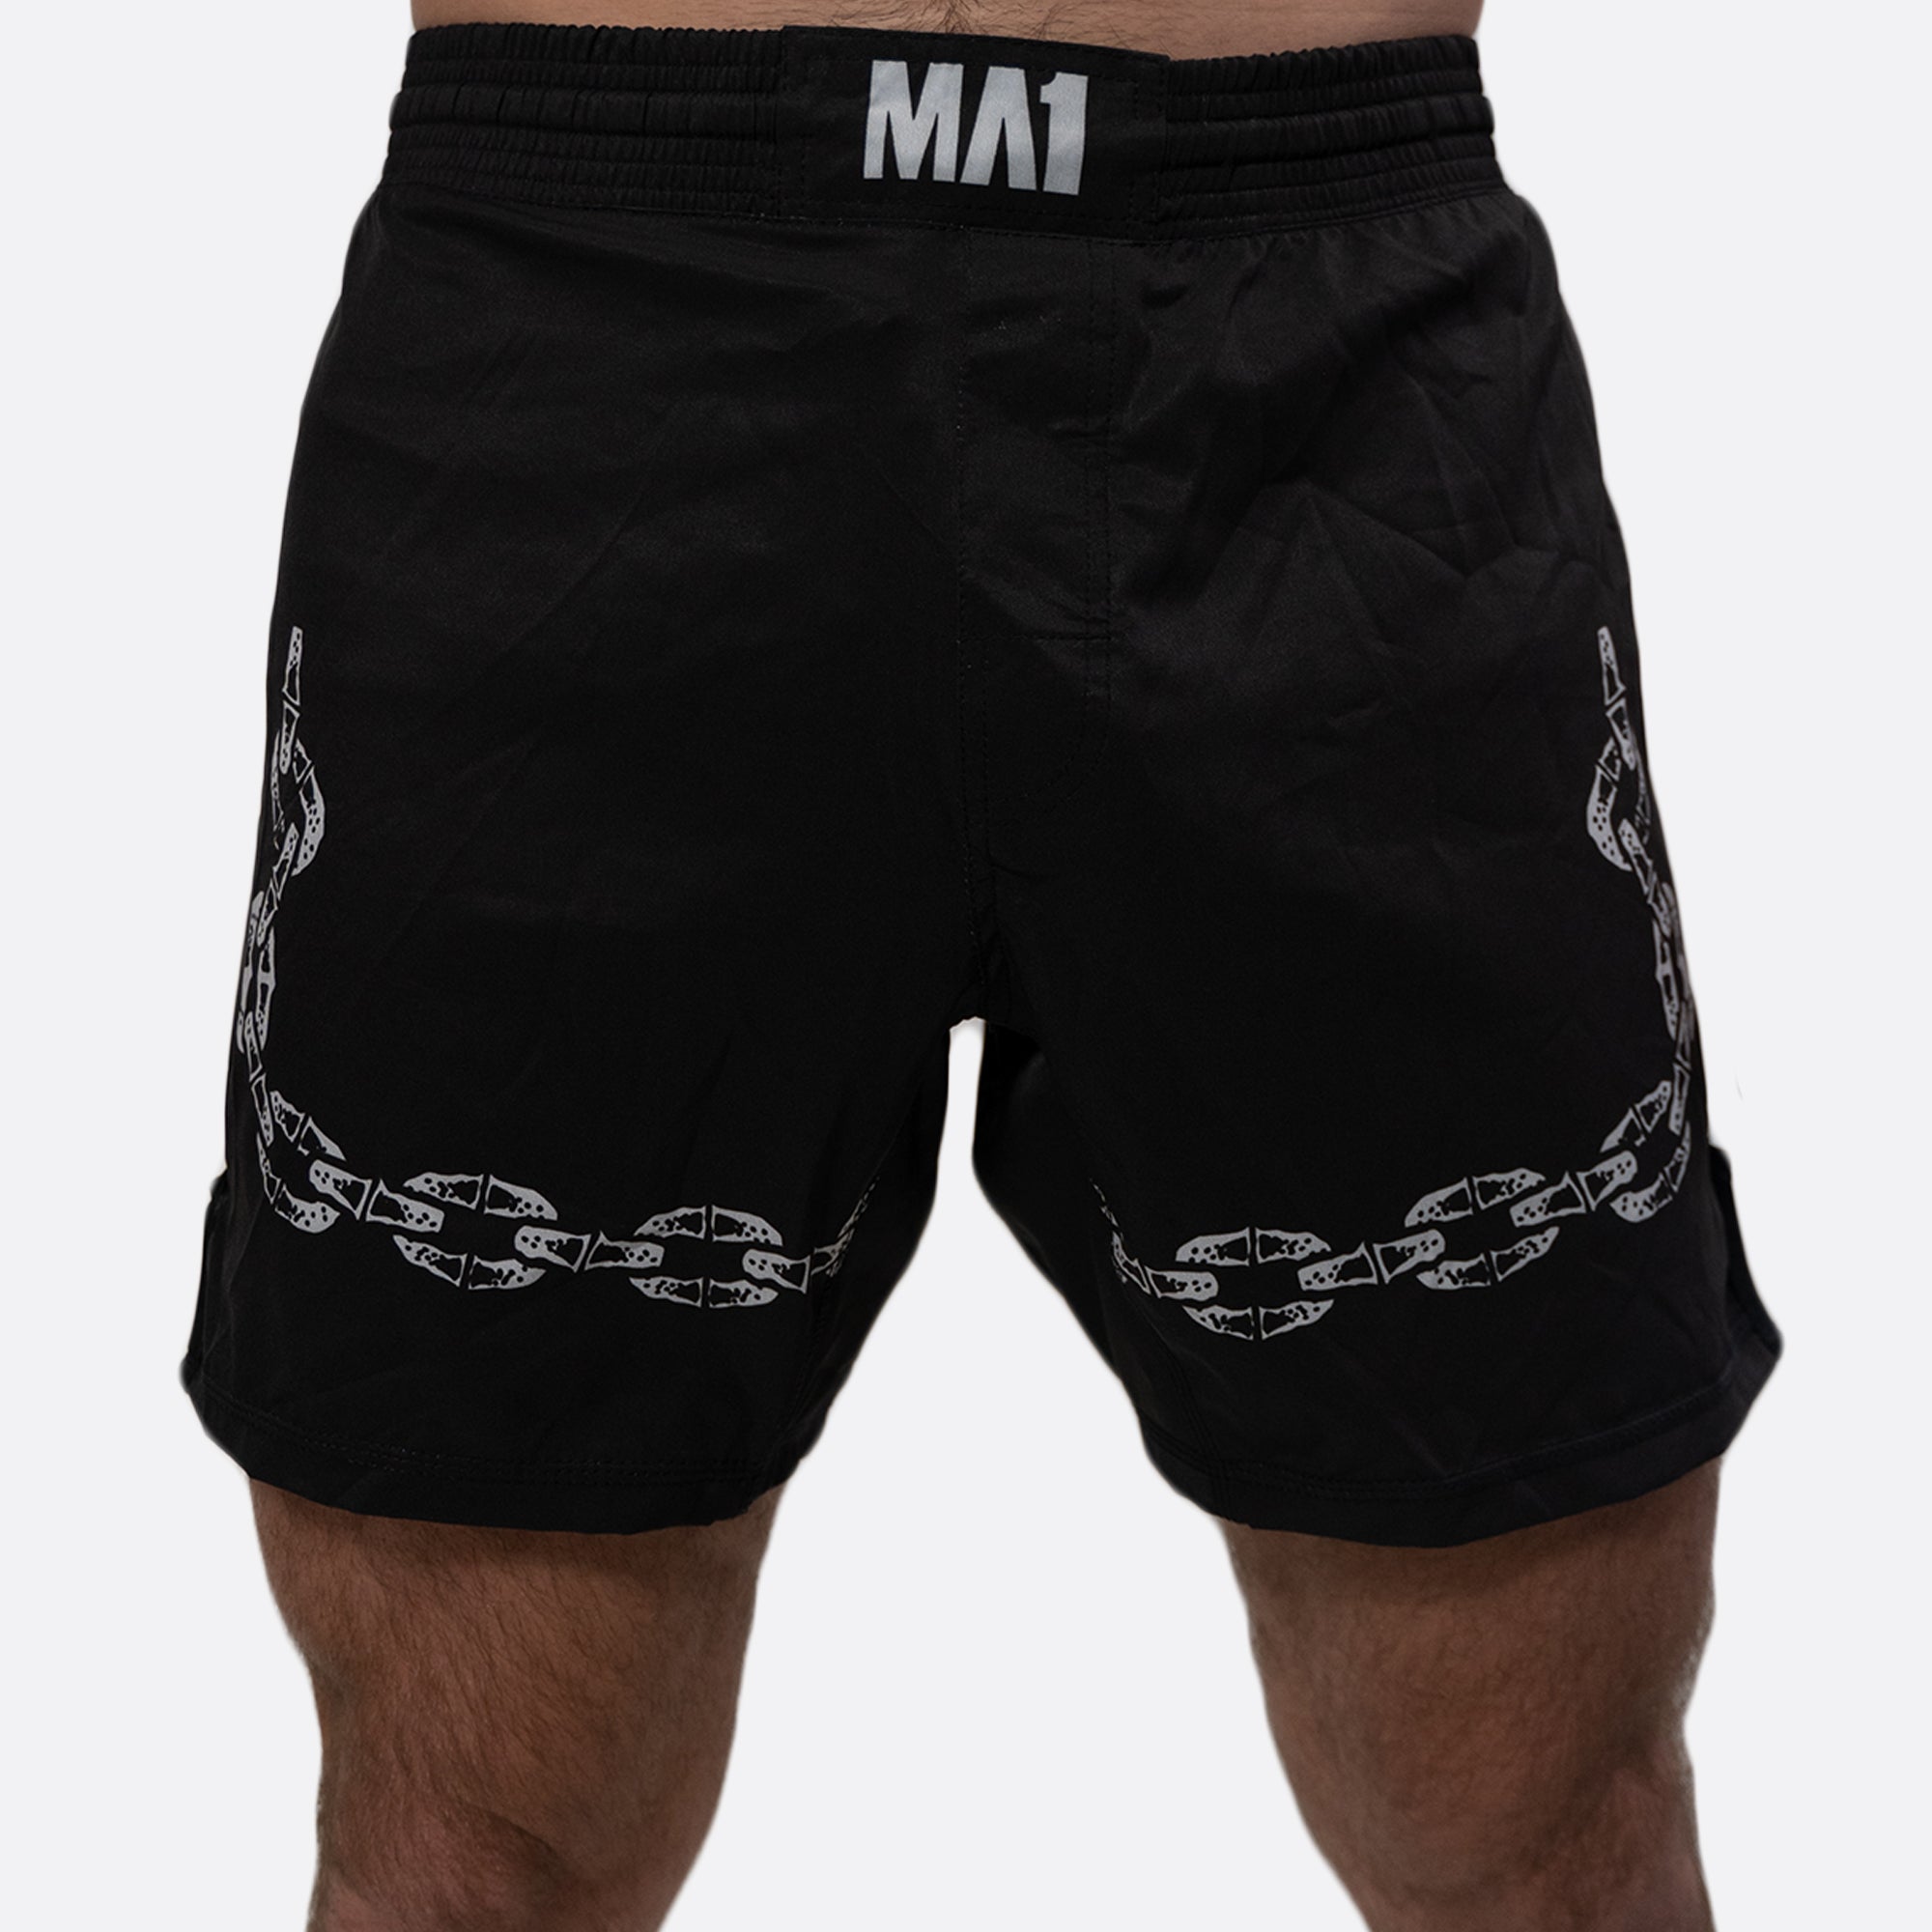 MA1 Flash Basic Cut MMA Shorts